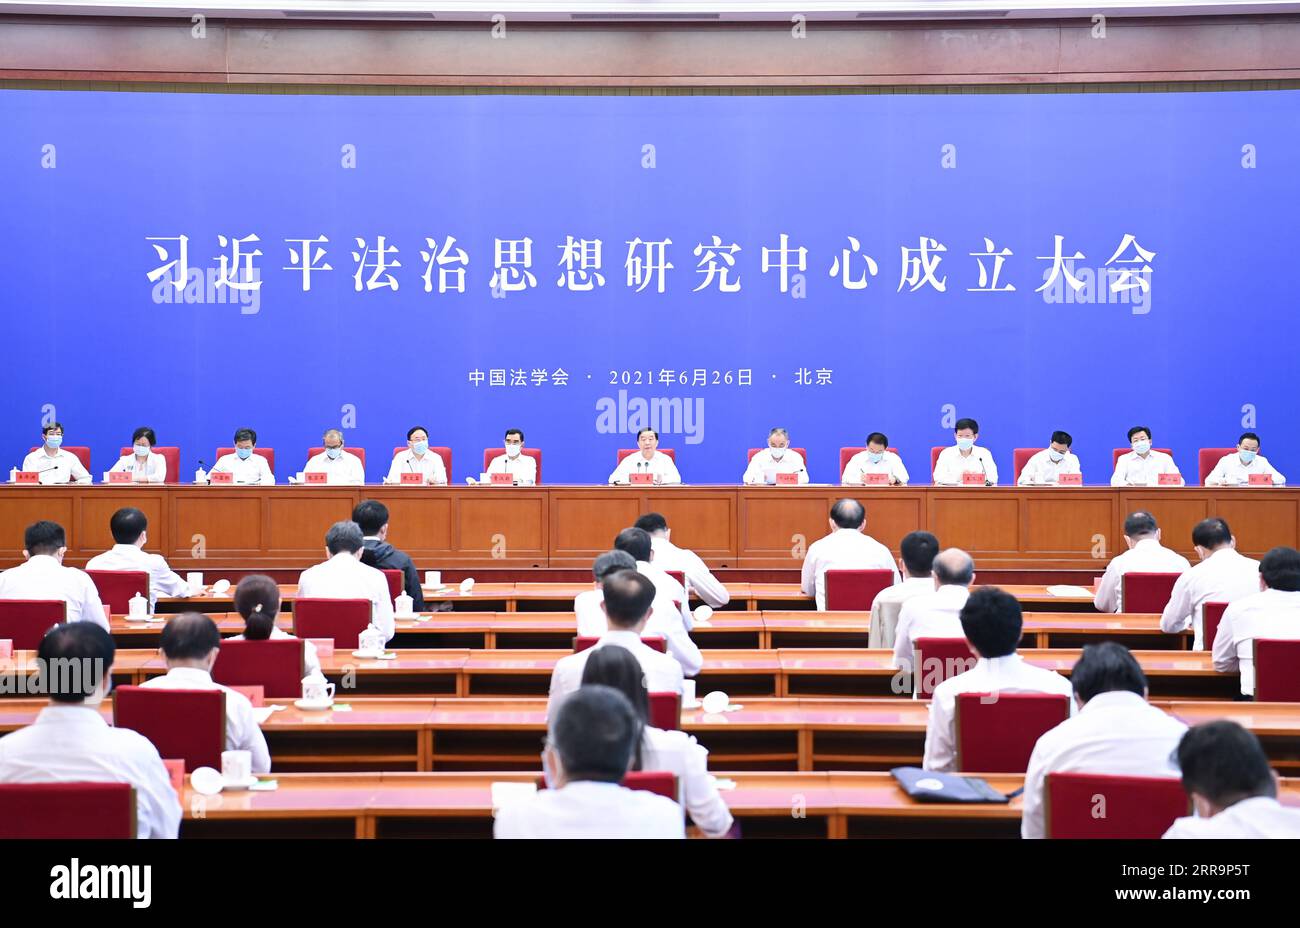 210626 -- PECHINO, 26 giugno 2021 -- Wang Chen, membro dell'Ufficio politico del Comitato centrale del Partito Comunista Cinese e capo della società di diritto cinese, parla della cerimonia di fondazione di un centro di ricerca sul pensiero di Xi Jinping sullo Stato di diritto a Pechino, capitale della Cina, il 26 giugno 2021. CHINA-BEIJING-WANG CHEN-CENTRO DI RICERCA-CERIMONIA DI FONDAZIONE CN LIXXIANG PUBLICATIONXNOTXINXCHN Foto Stock